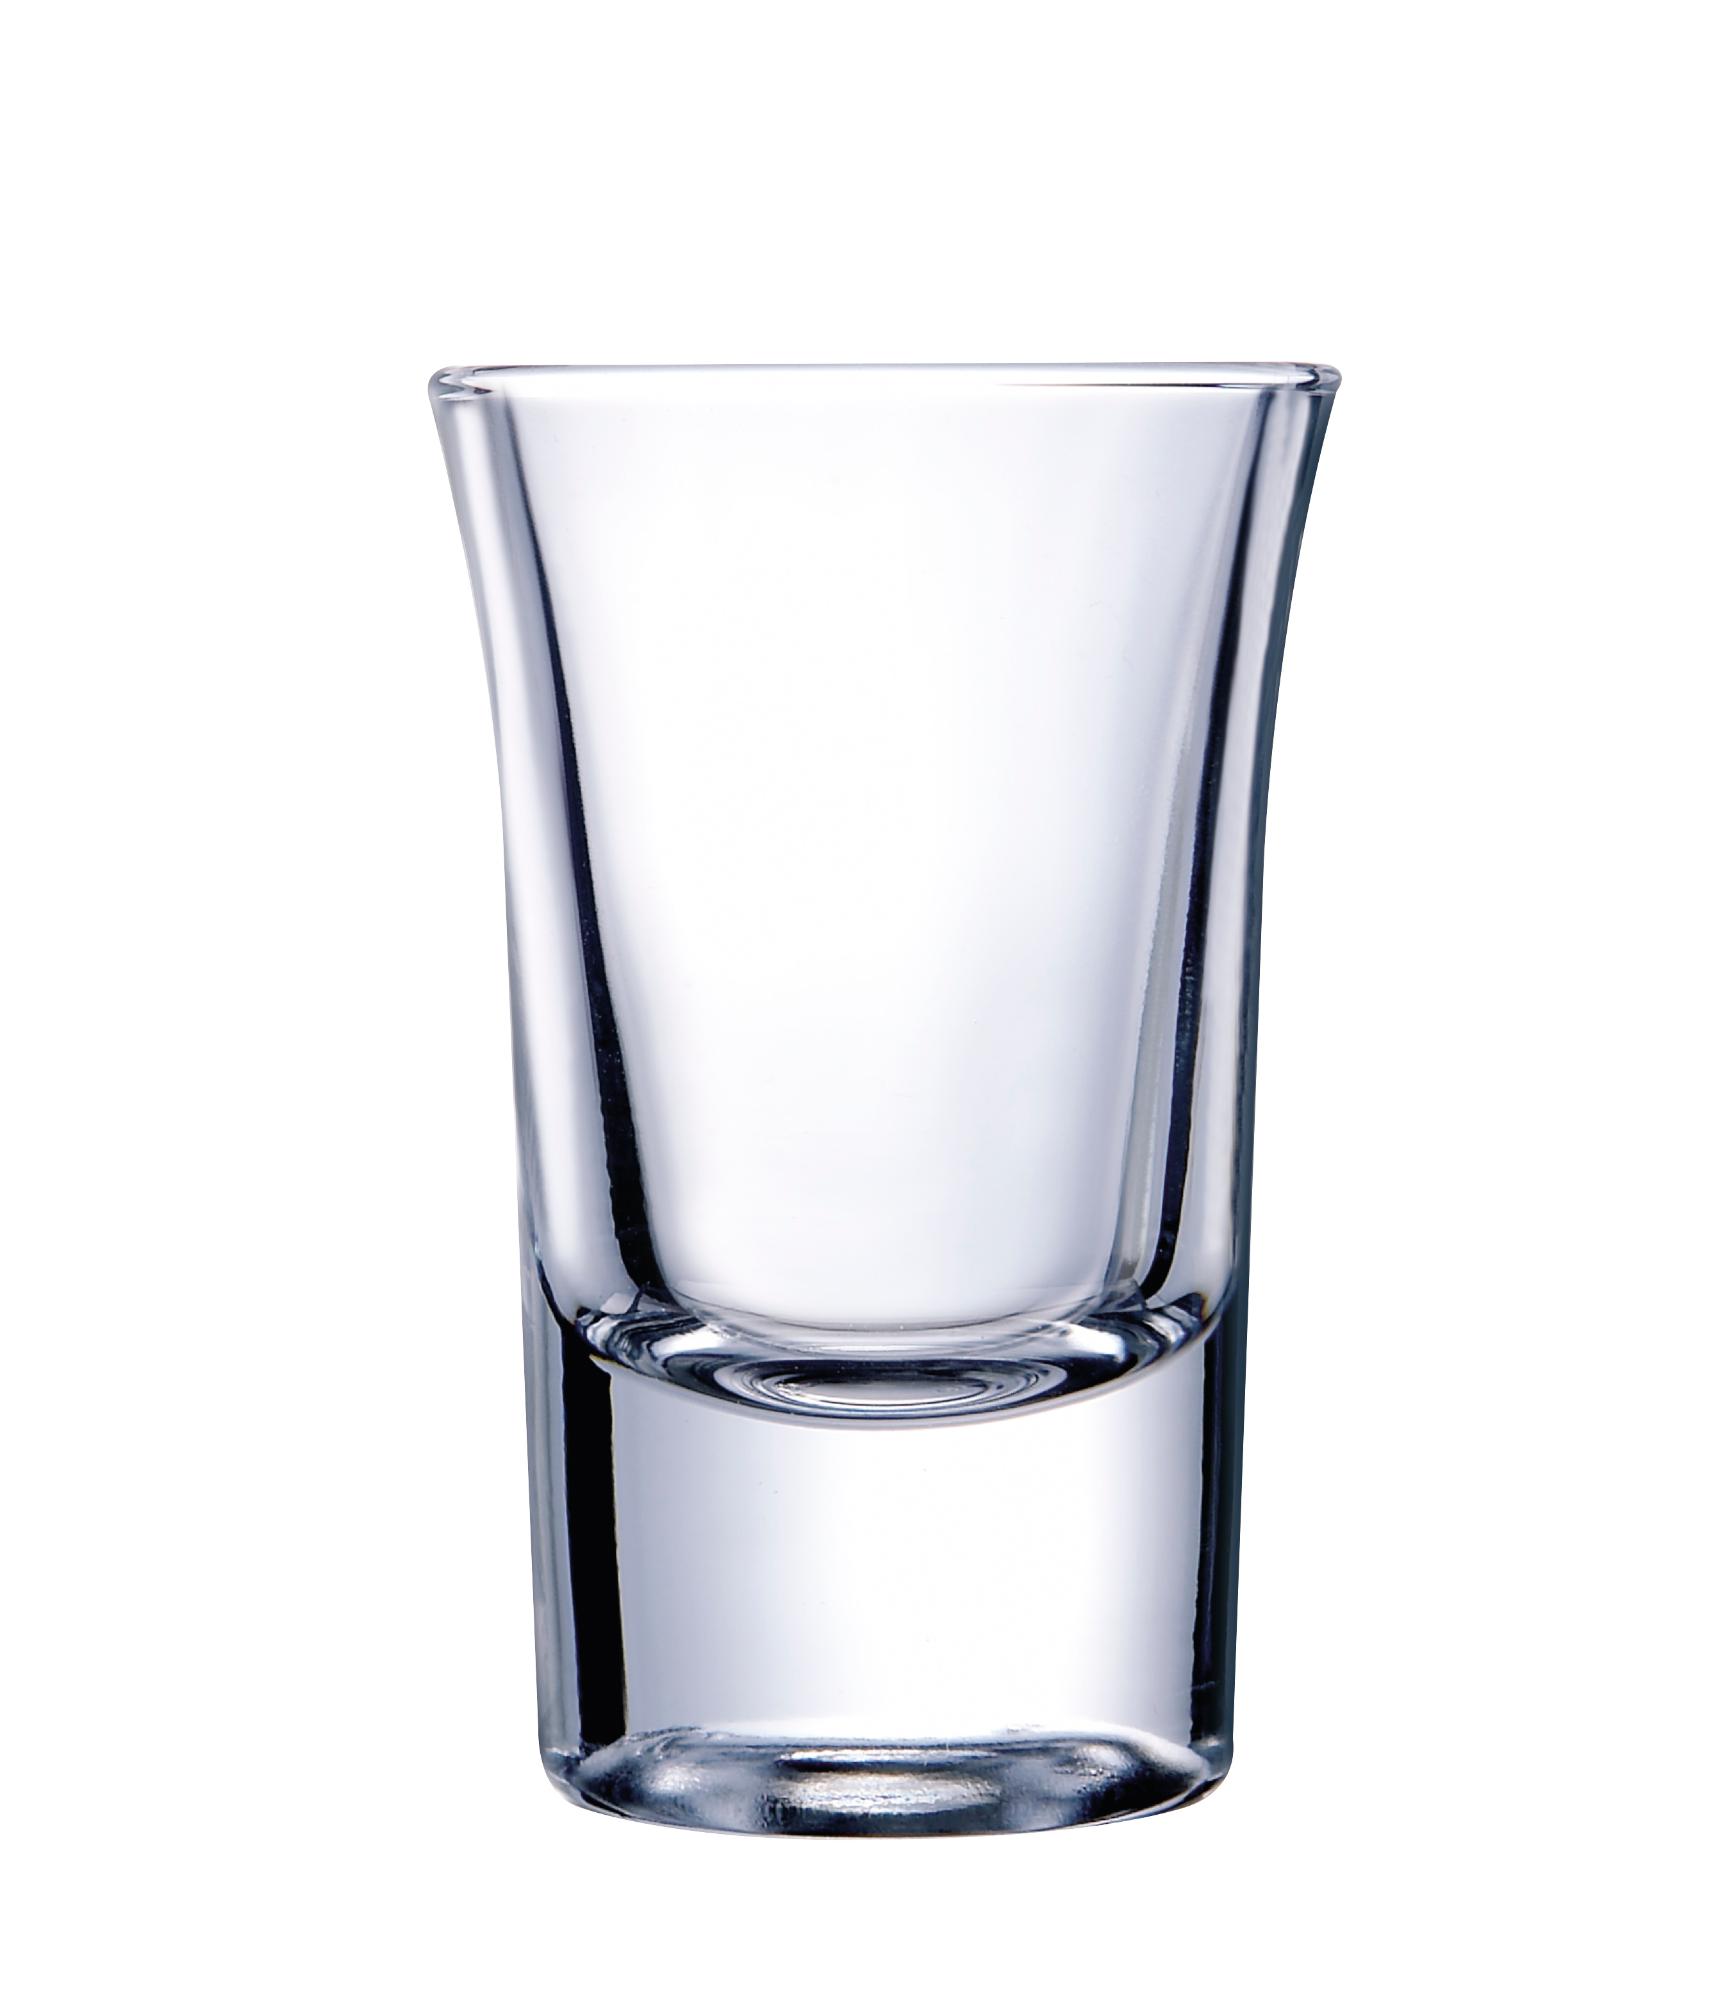 Hot shot glass, 34ml